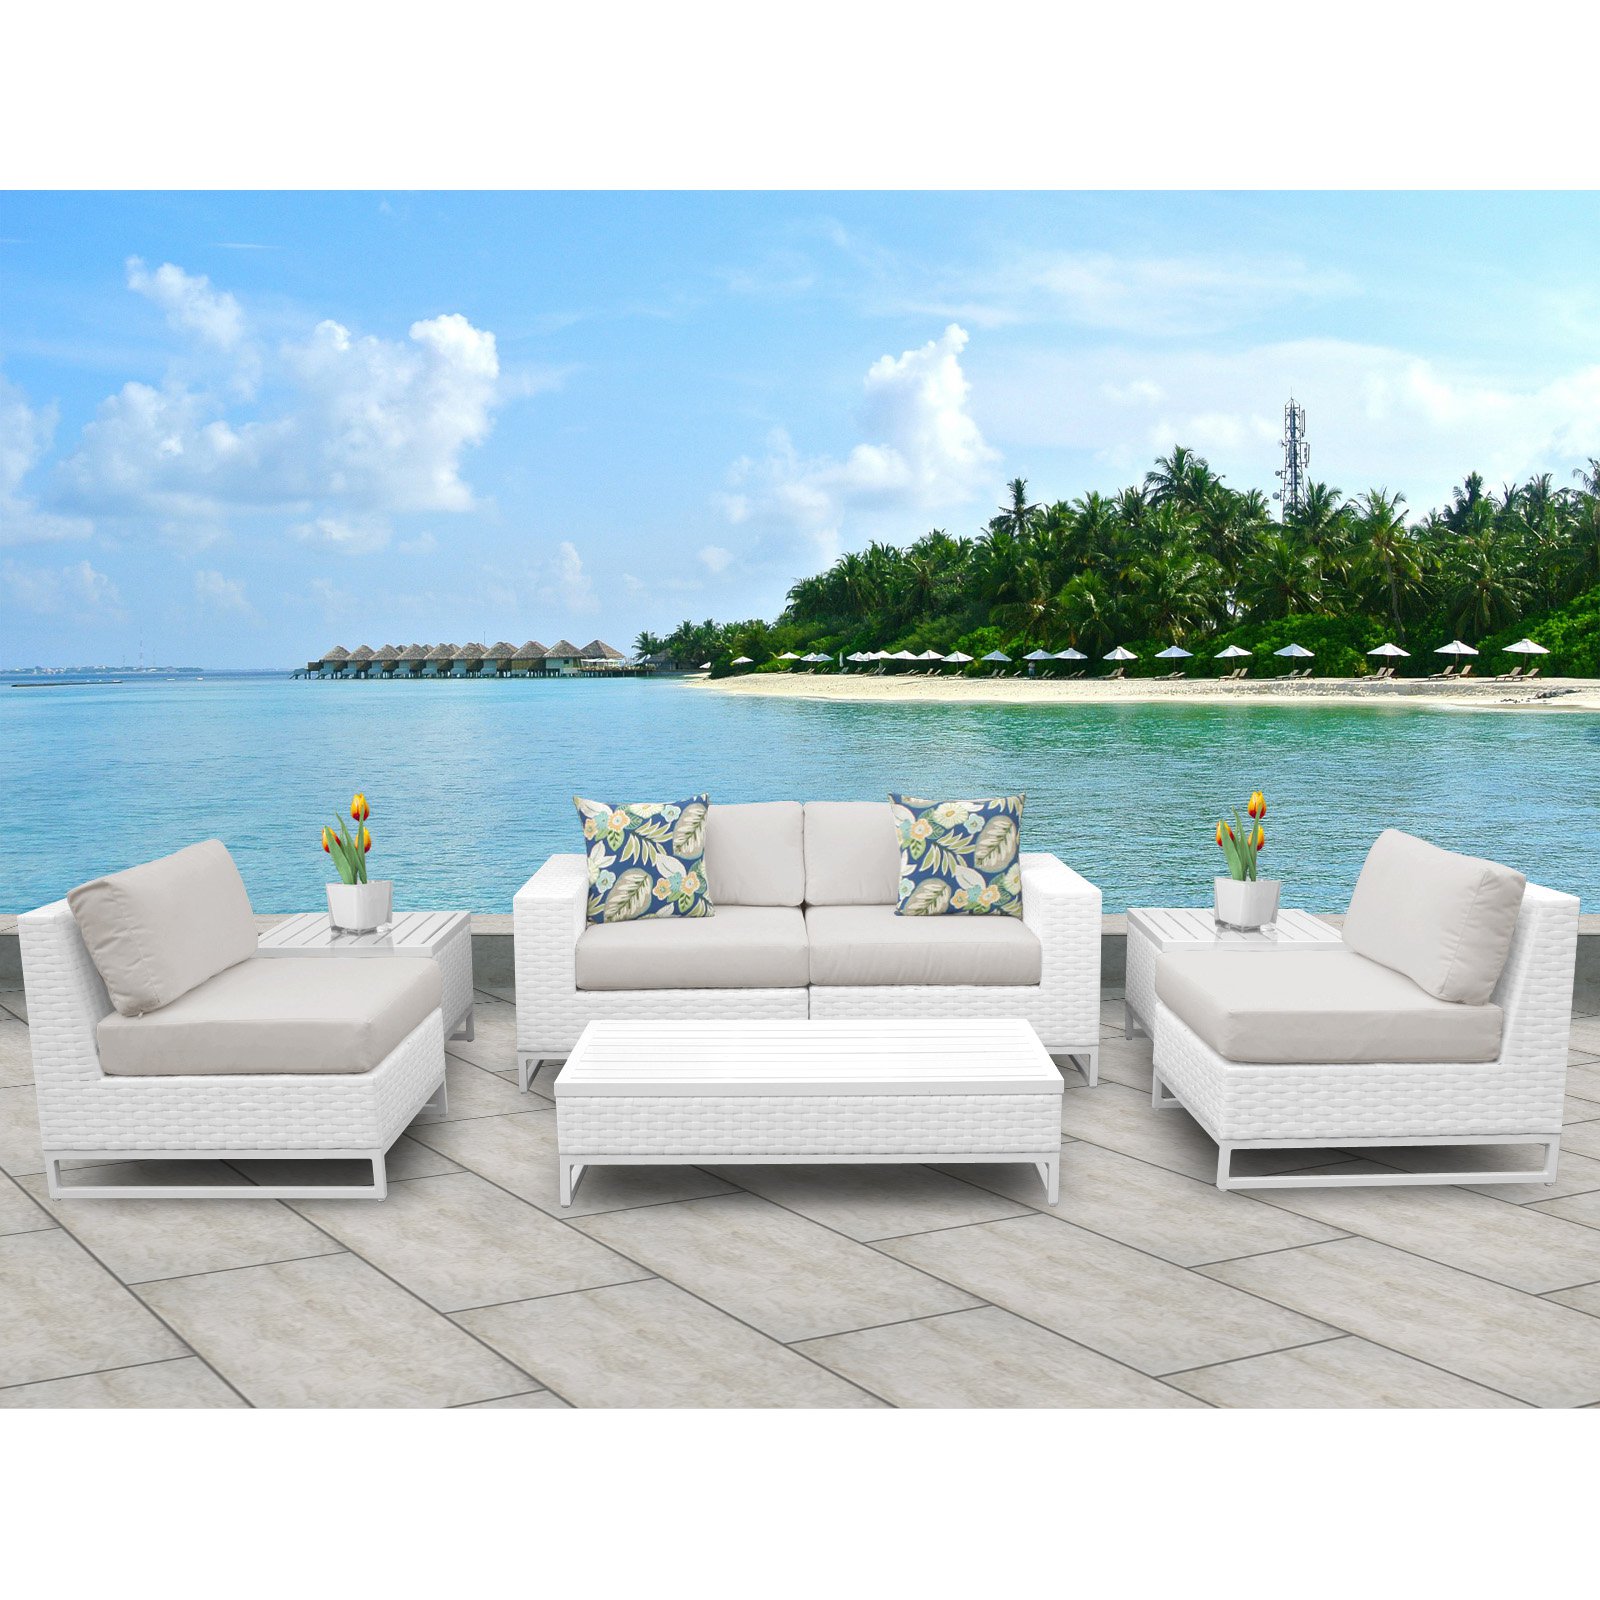 TK Classics Miami 7 Piece Outdoor Wicker Patio Furniture Set 07e - image 1 of 3